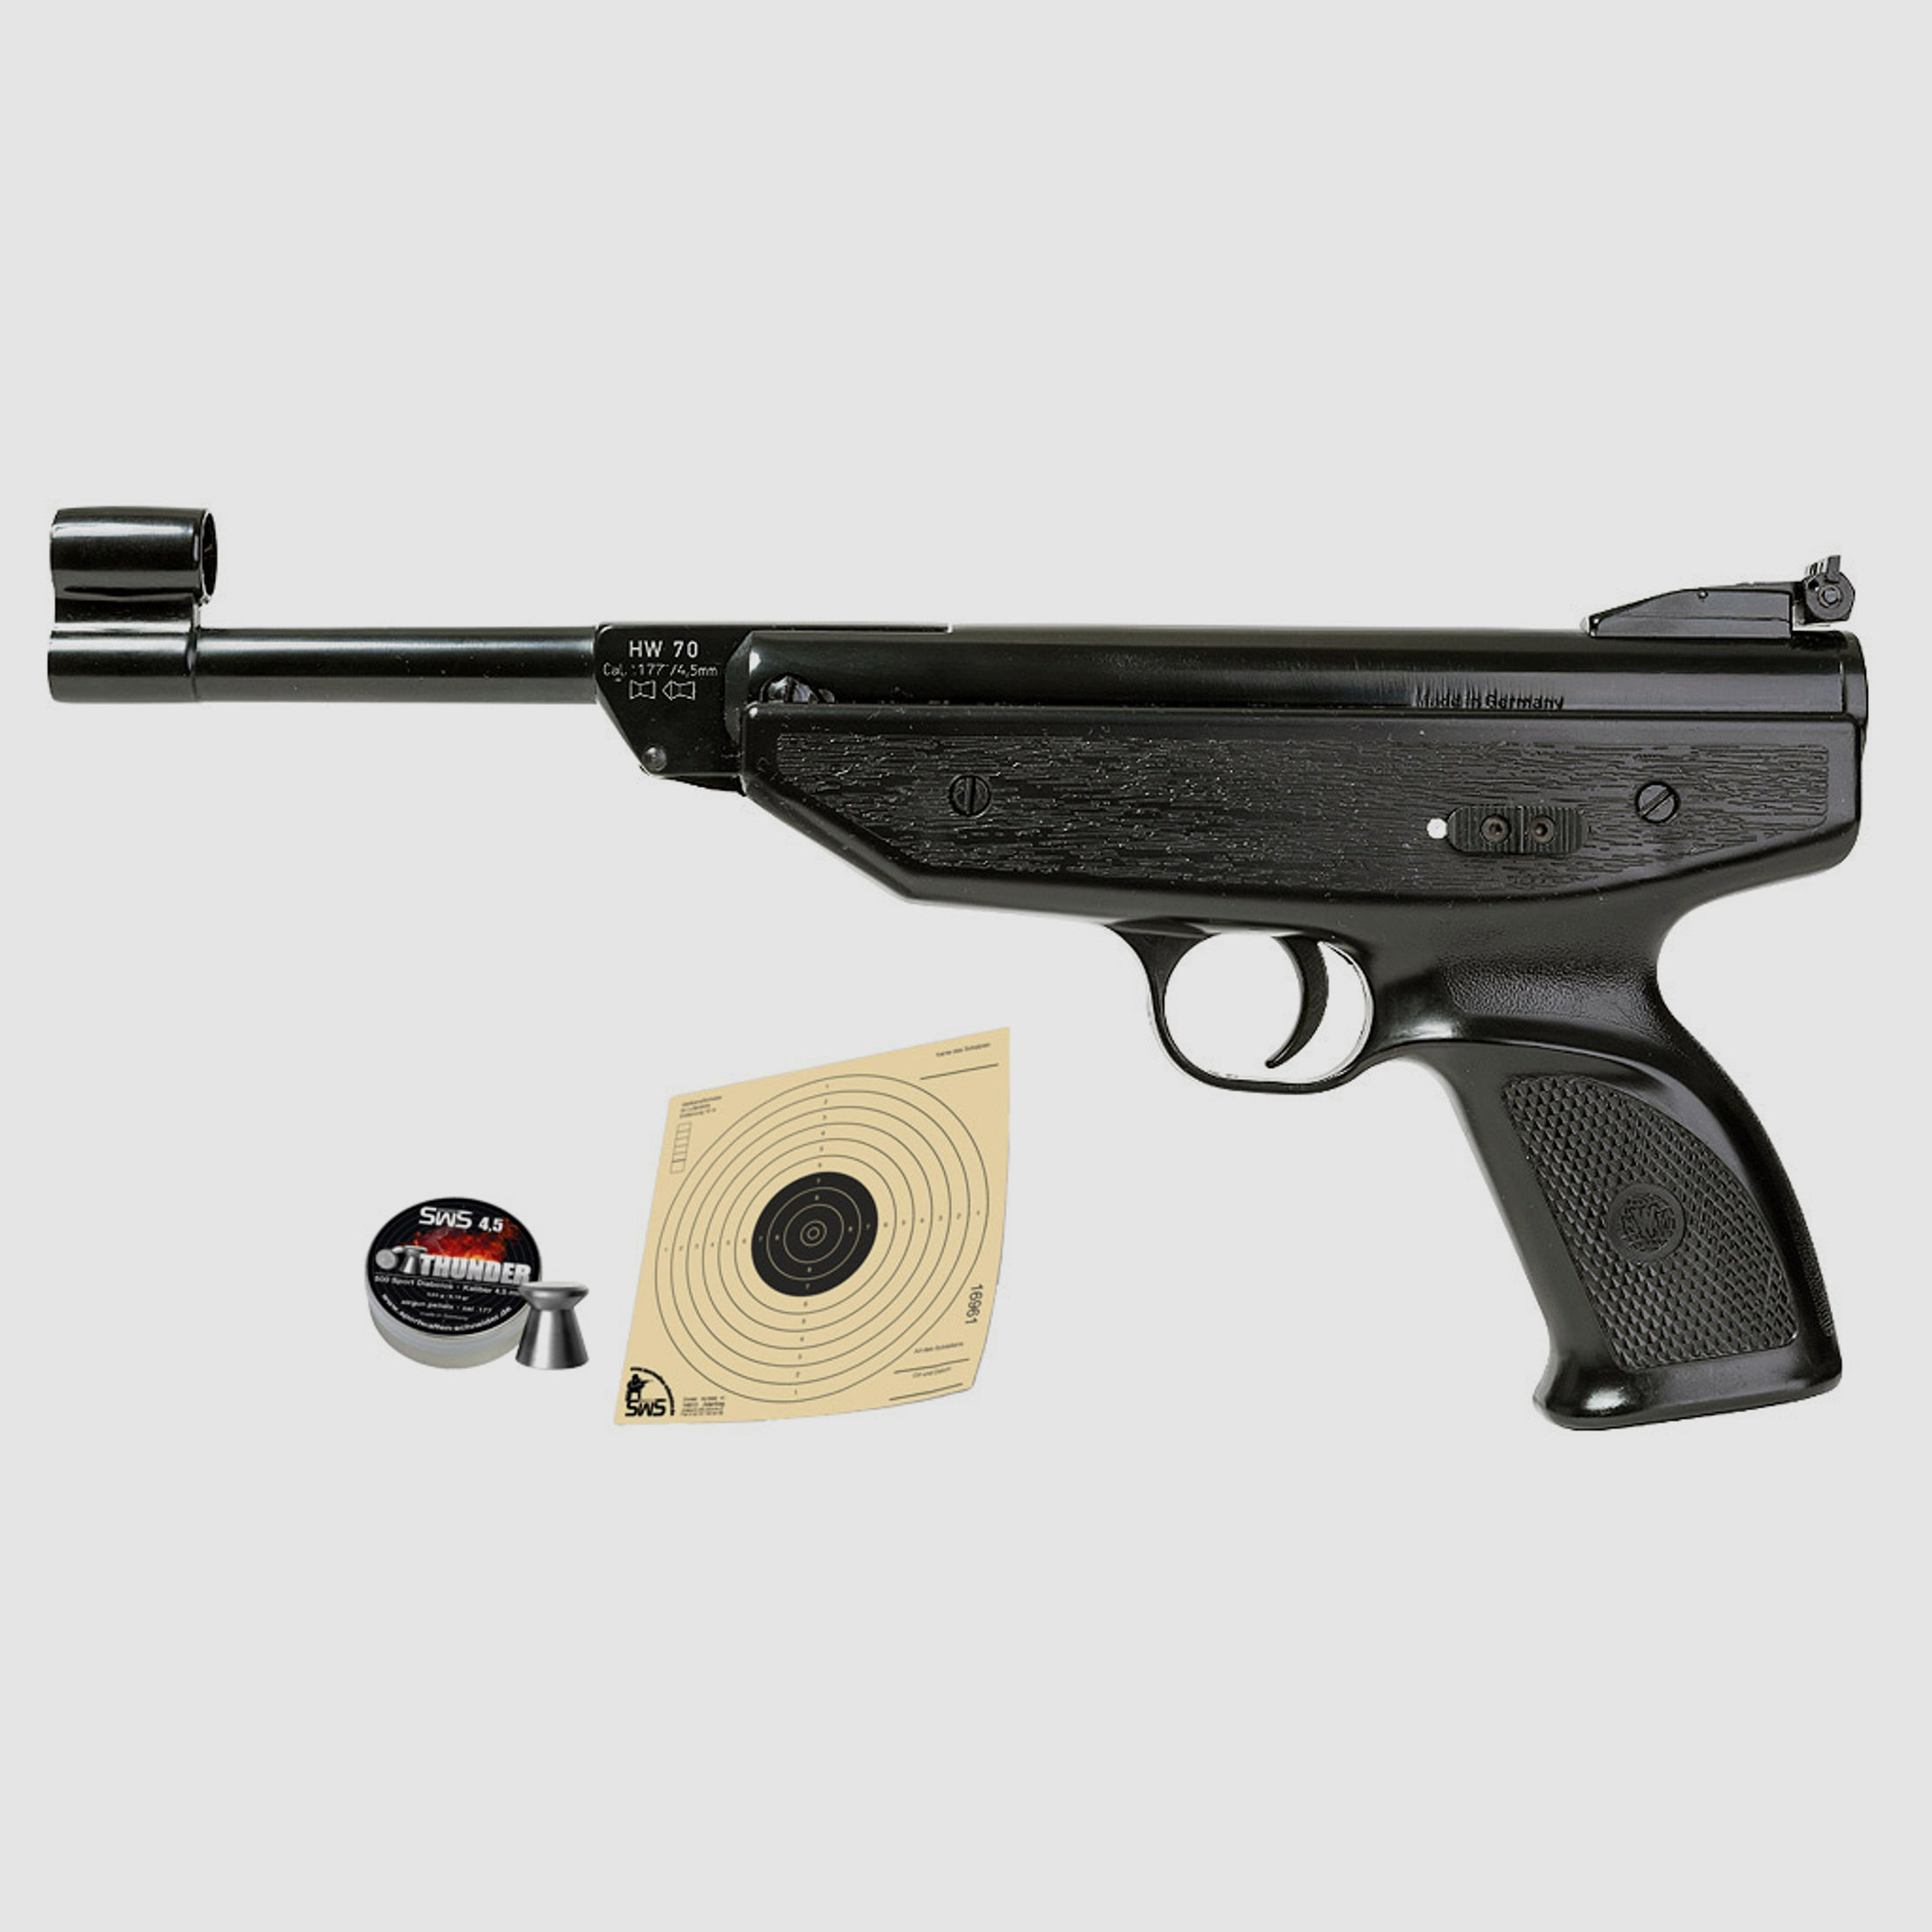 Knicklauf Luftpistole Weihrauch HW 70 Kaliber 4,5 mm schwarz (P18) + Diabolos Zielscheiben